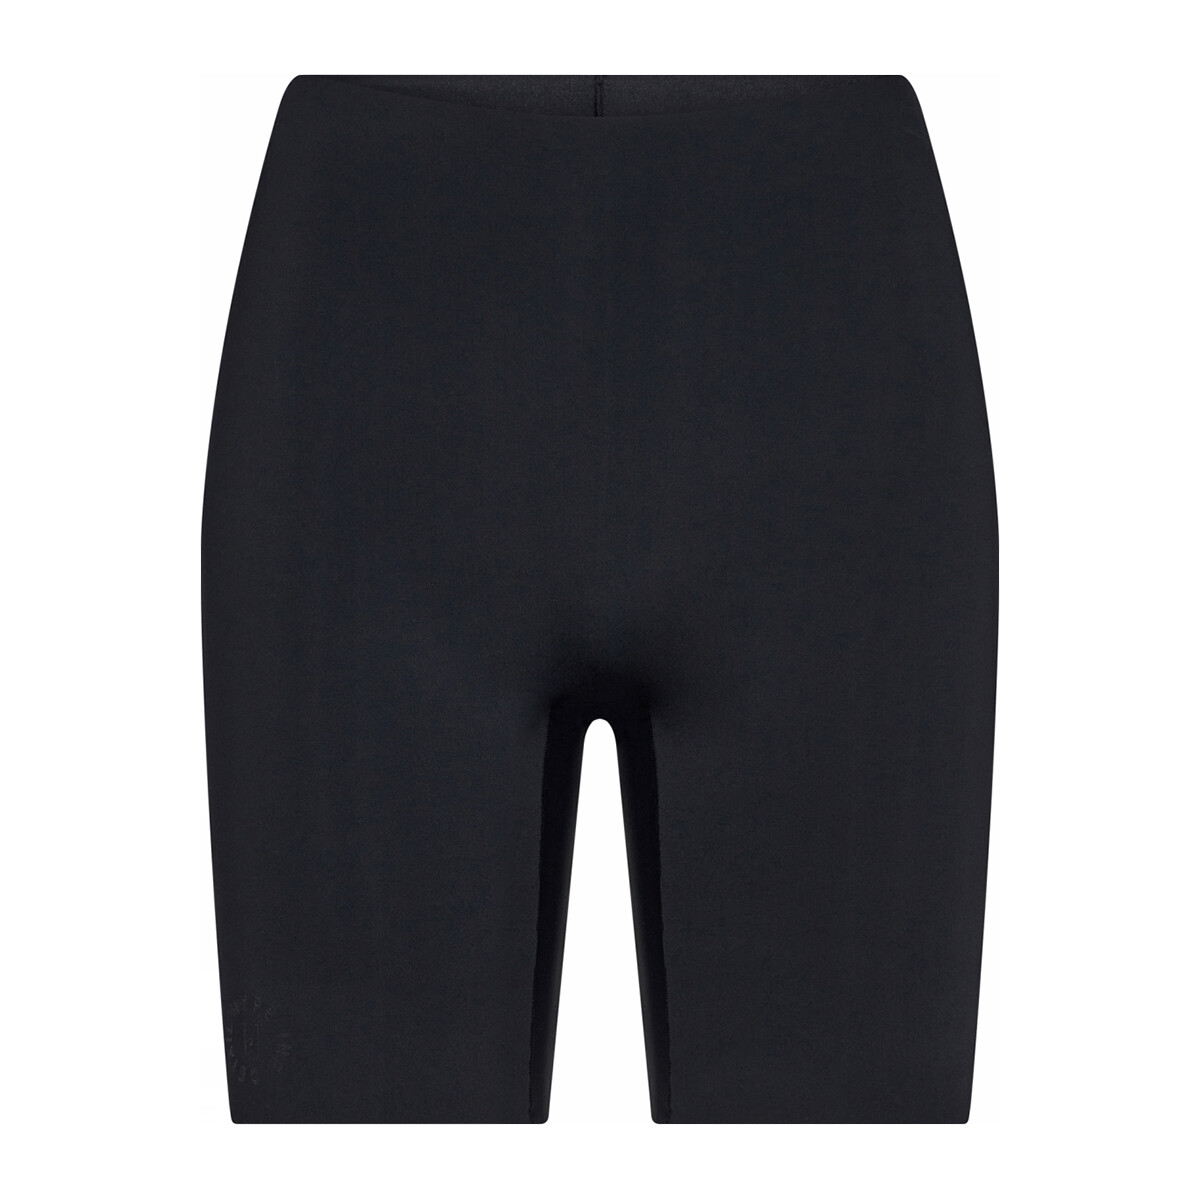 Se Hype The Detail Essentials Shorts, Farve: Sort, Størrelse: L, Dame hos Netlingeri.dk